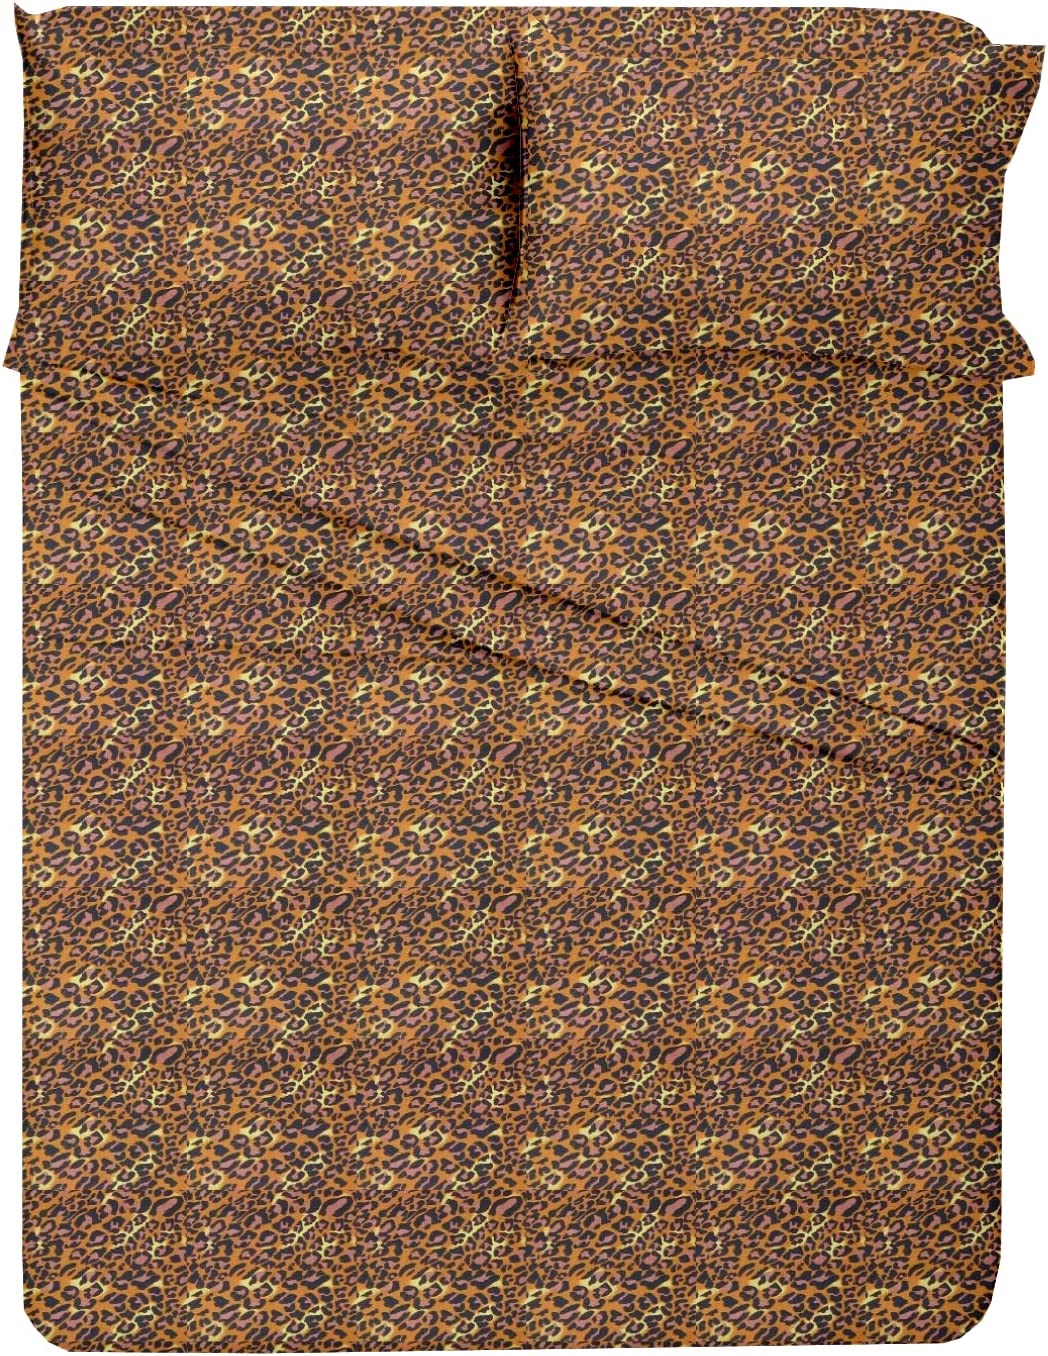 Leopard Print Duvet Cover Set - 100% Cotton Bedding